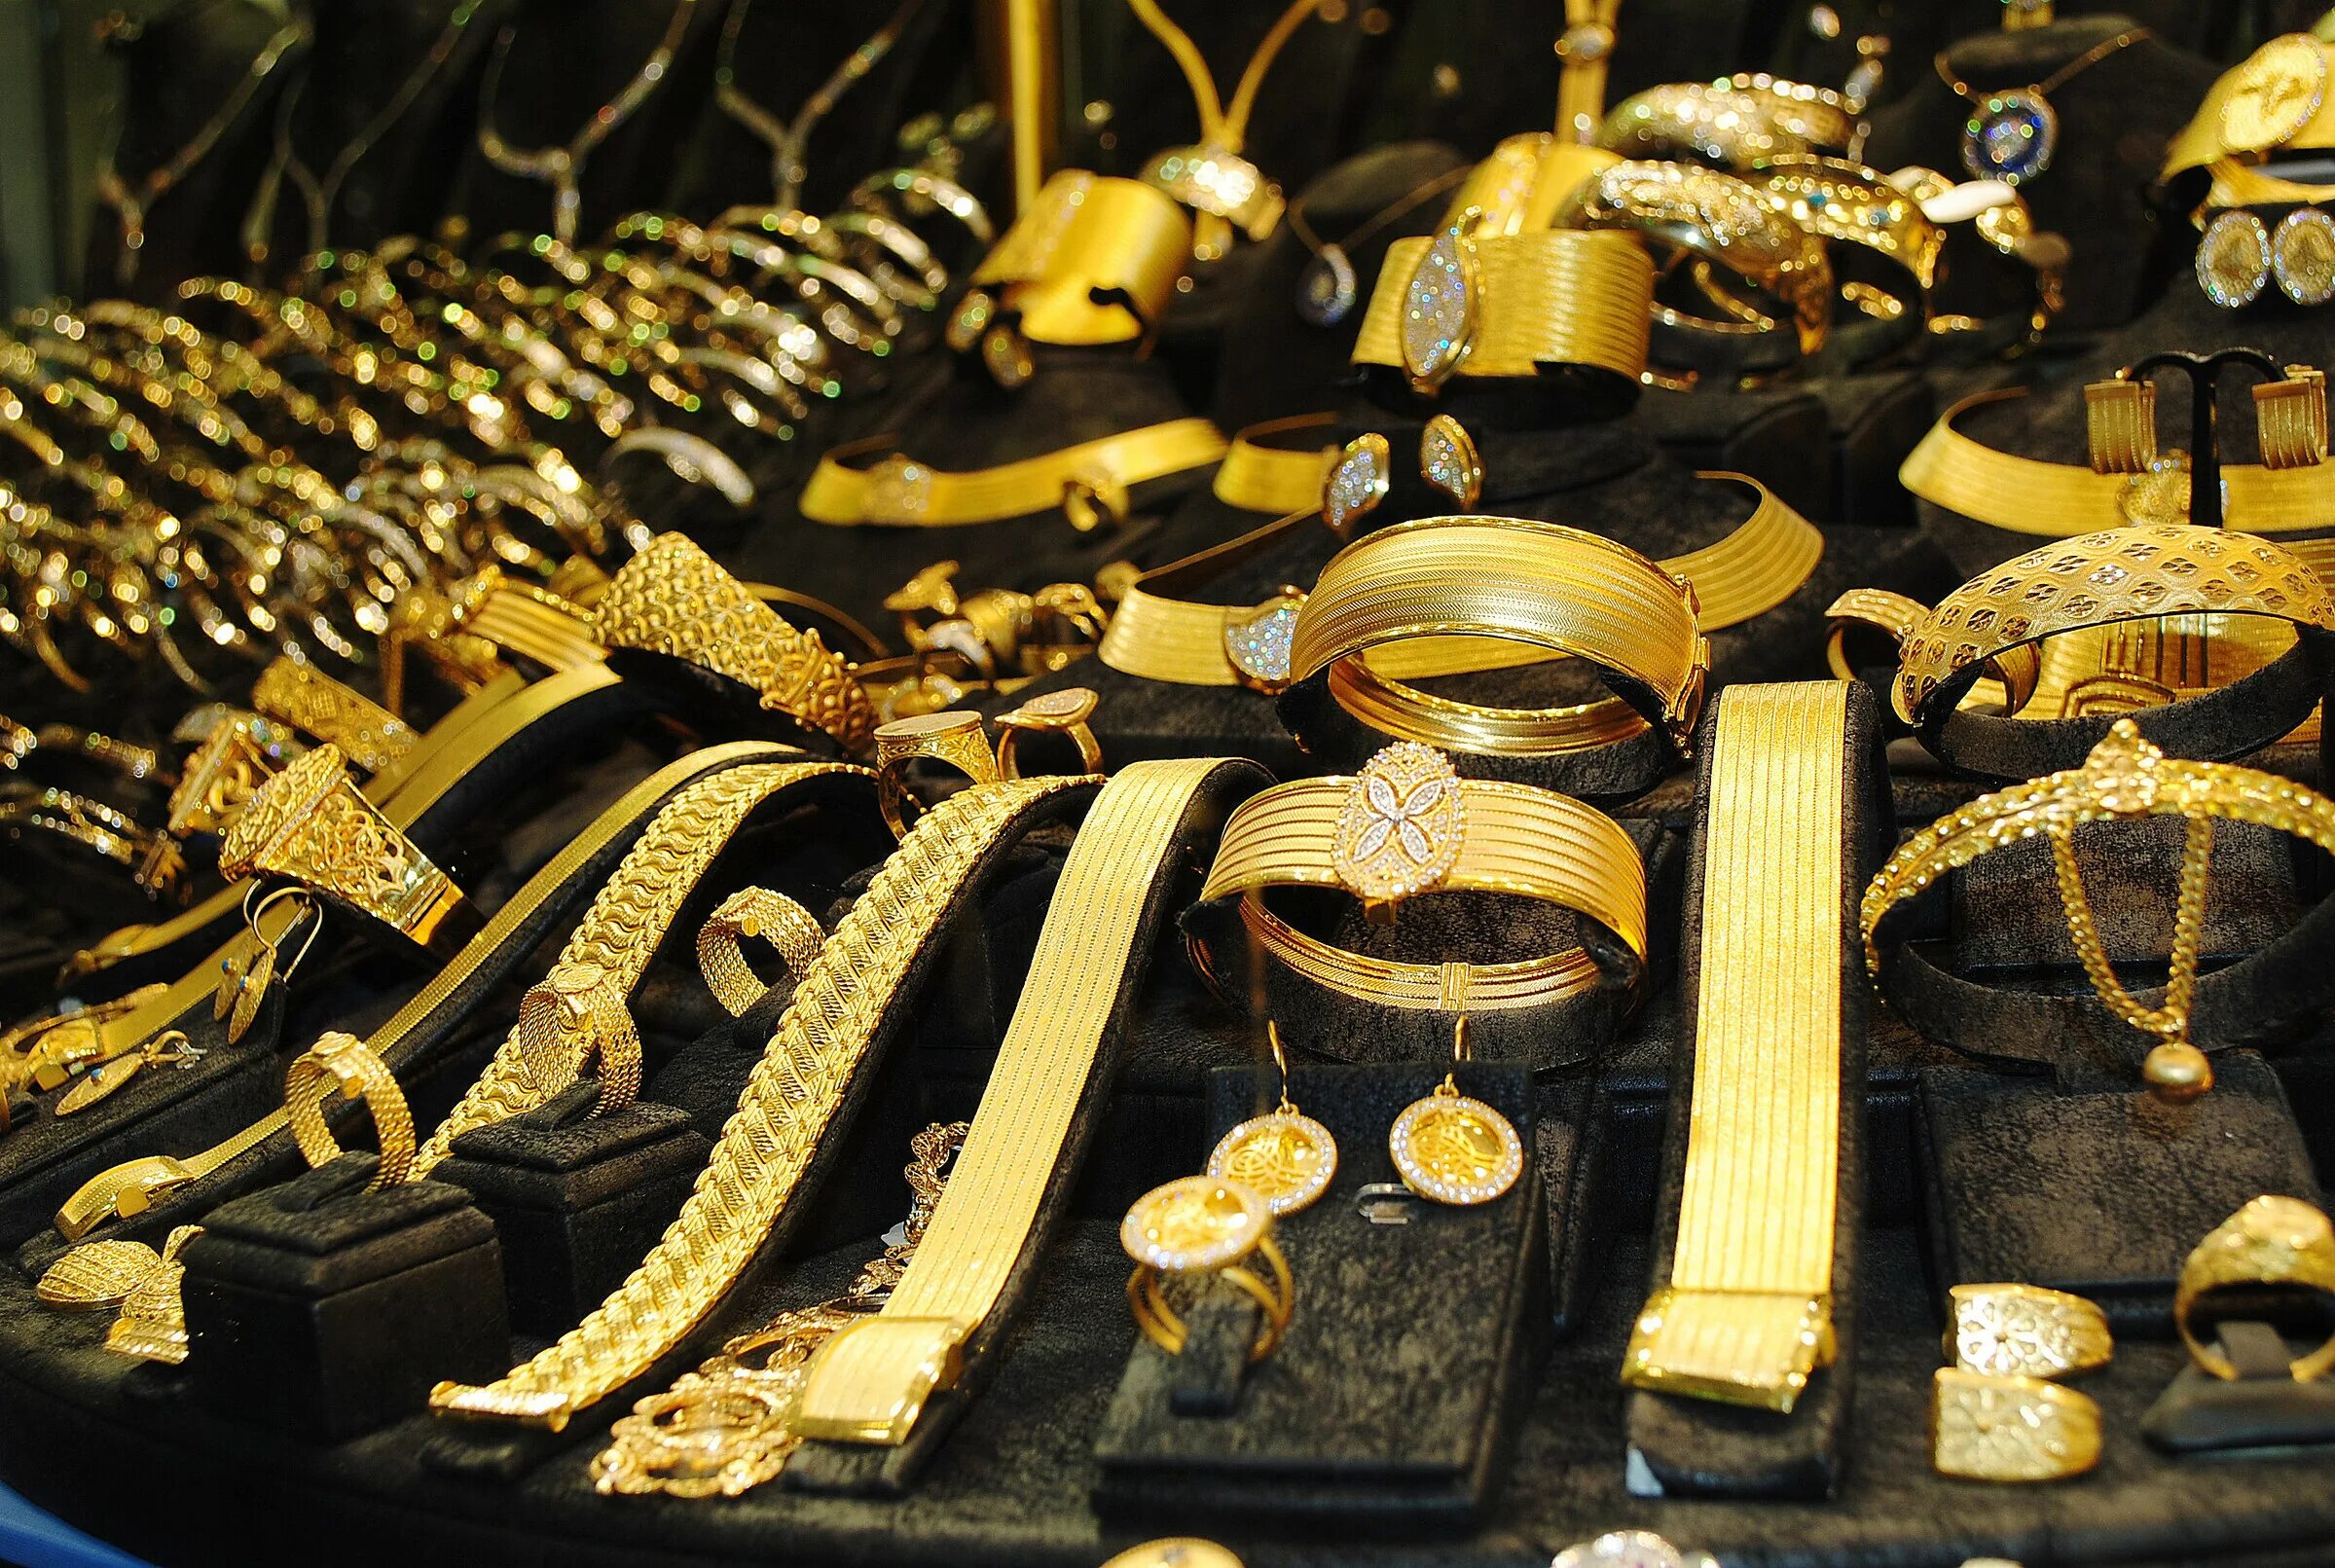 Ювелирный магазин распродажа. Много золотых украшений. Турецкий магазин золота. Ювелирные магазины в Турции. Скупка золота.